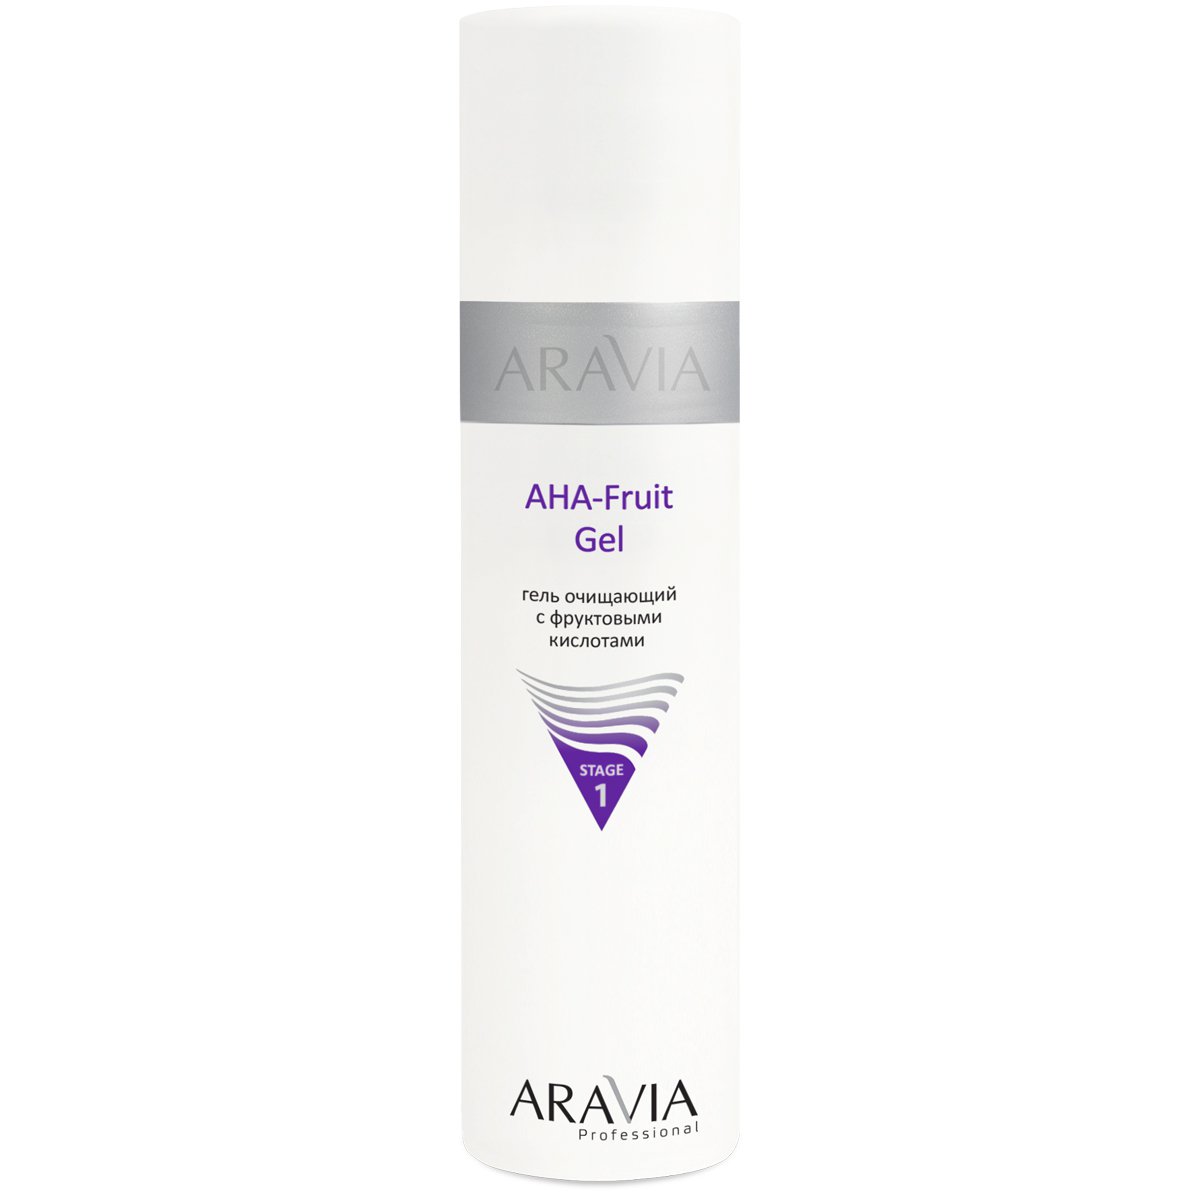 ARAVIA Professional Гель очищающий с фруктовыми кислотами AHA - Fruit Gel, 250 мл.